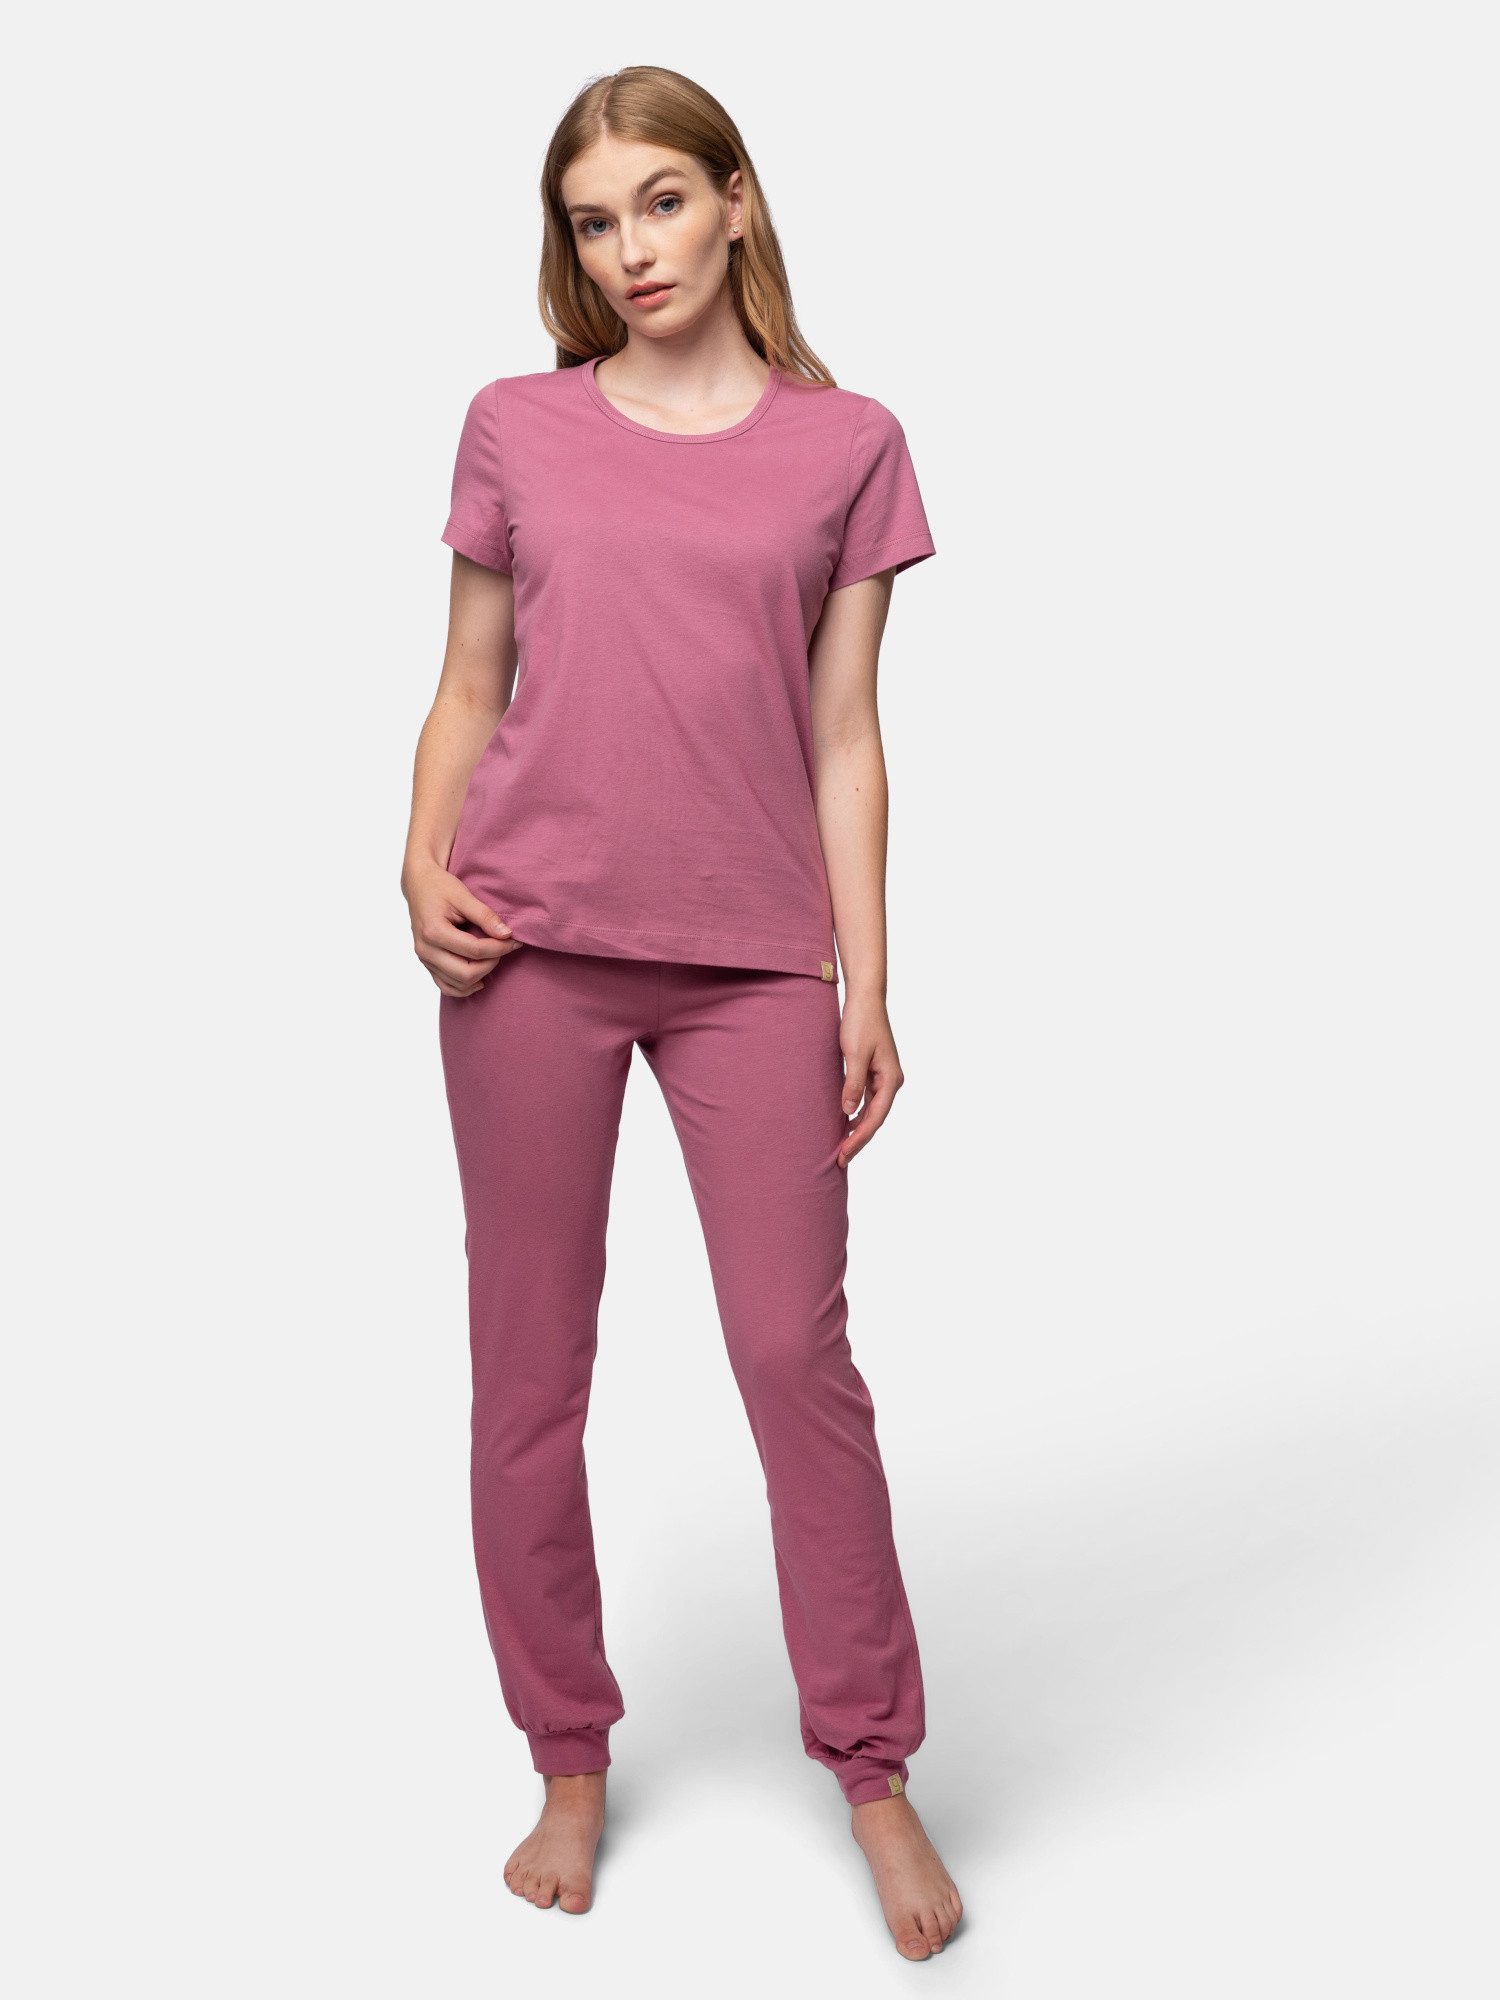 greenjama T-Shirt aus weichem Single Jersey, Bio Baumwolle, GOTS-zertifiziert